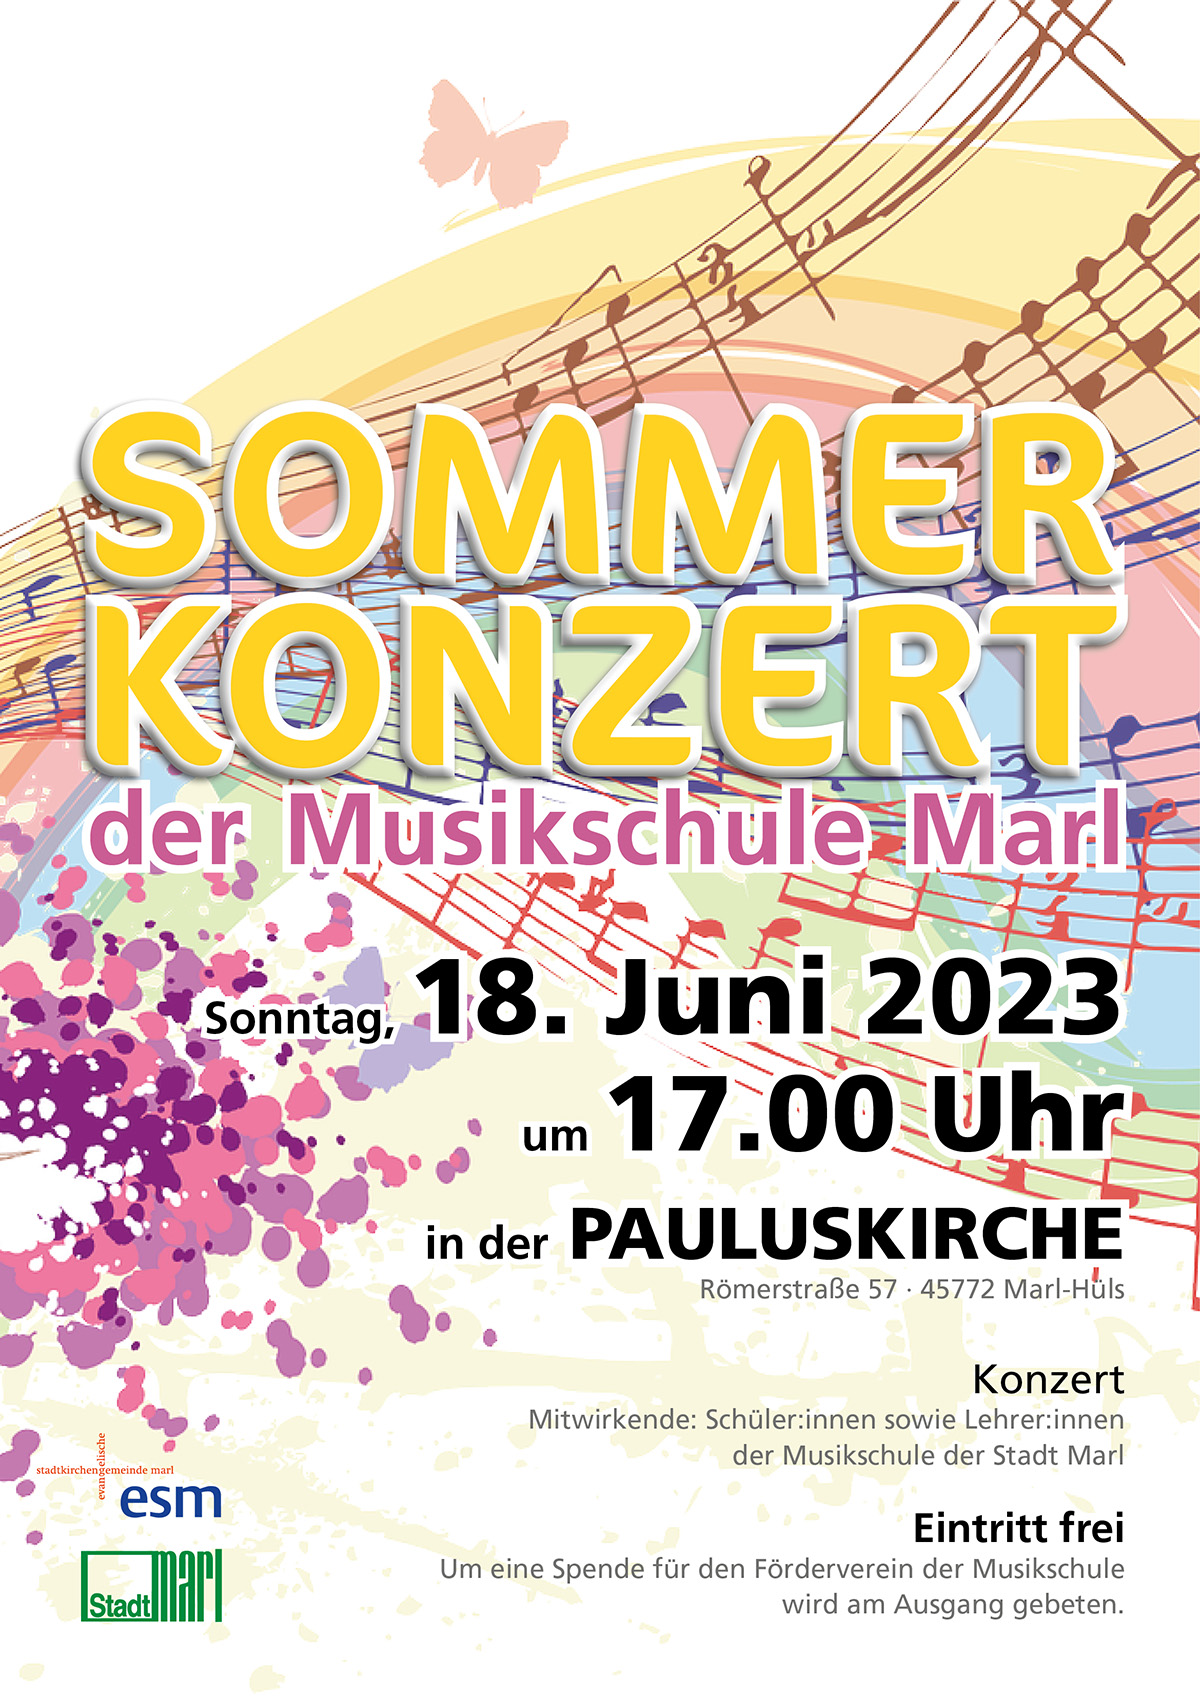 Einladung zum Sommerkonzert der Musikschule in der Pauluskirche 18. Juni 17.00 Uhr